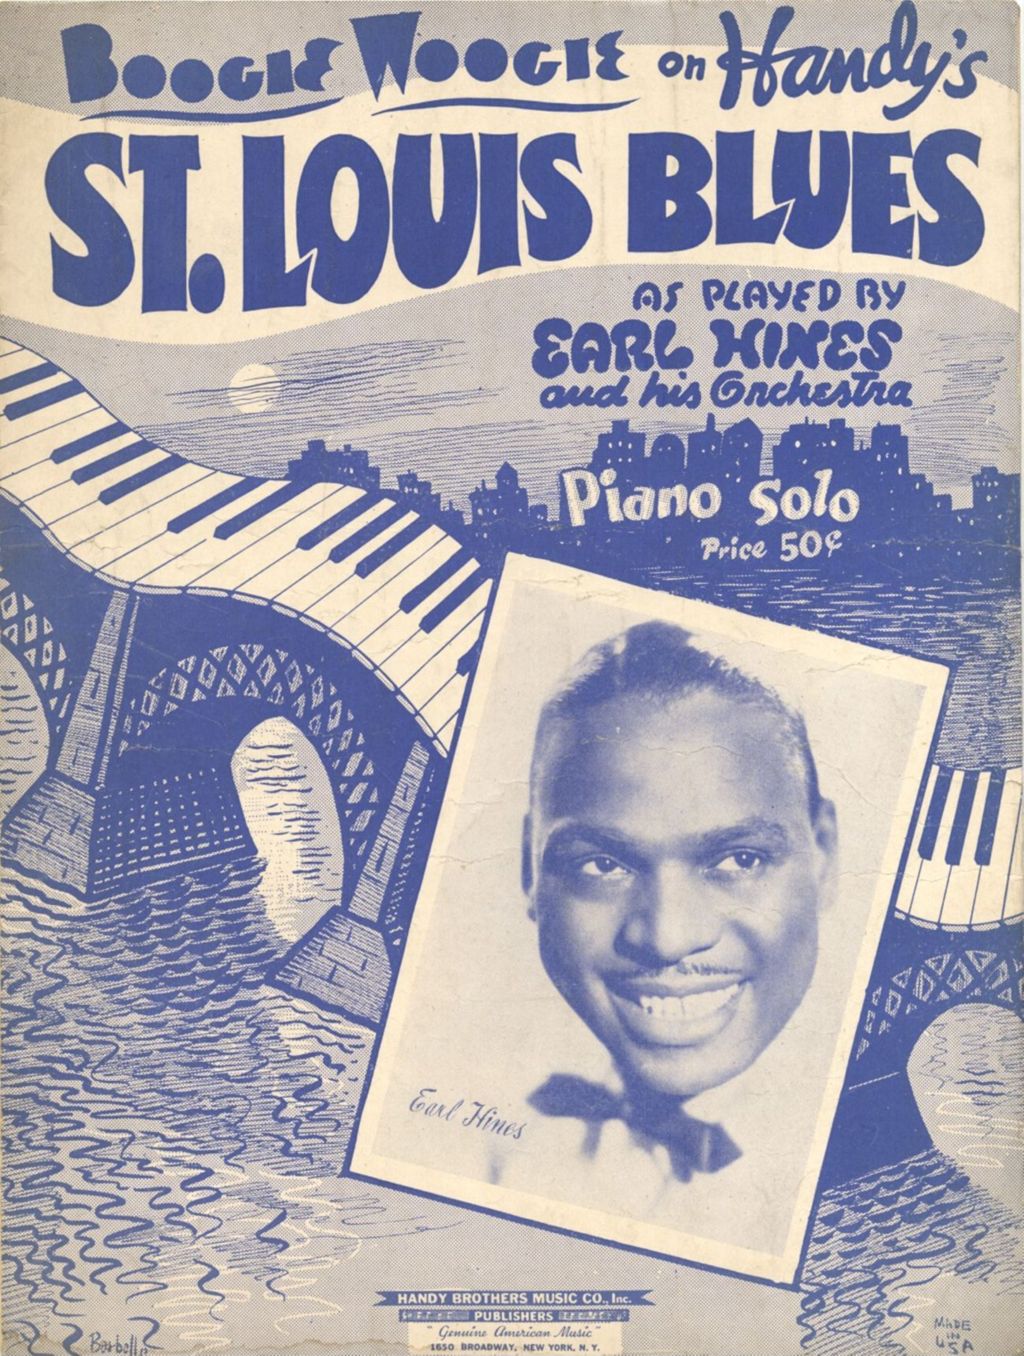 Miniature of Boogie Woogie on W.C. Handy's St. Louis Blues